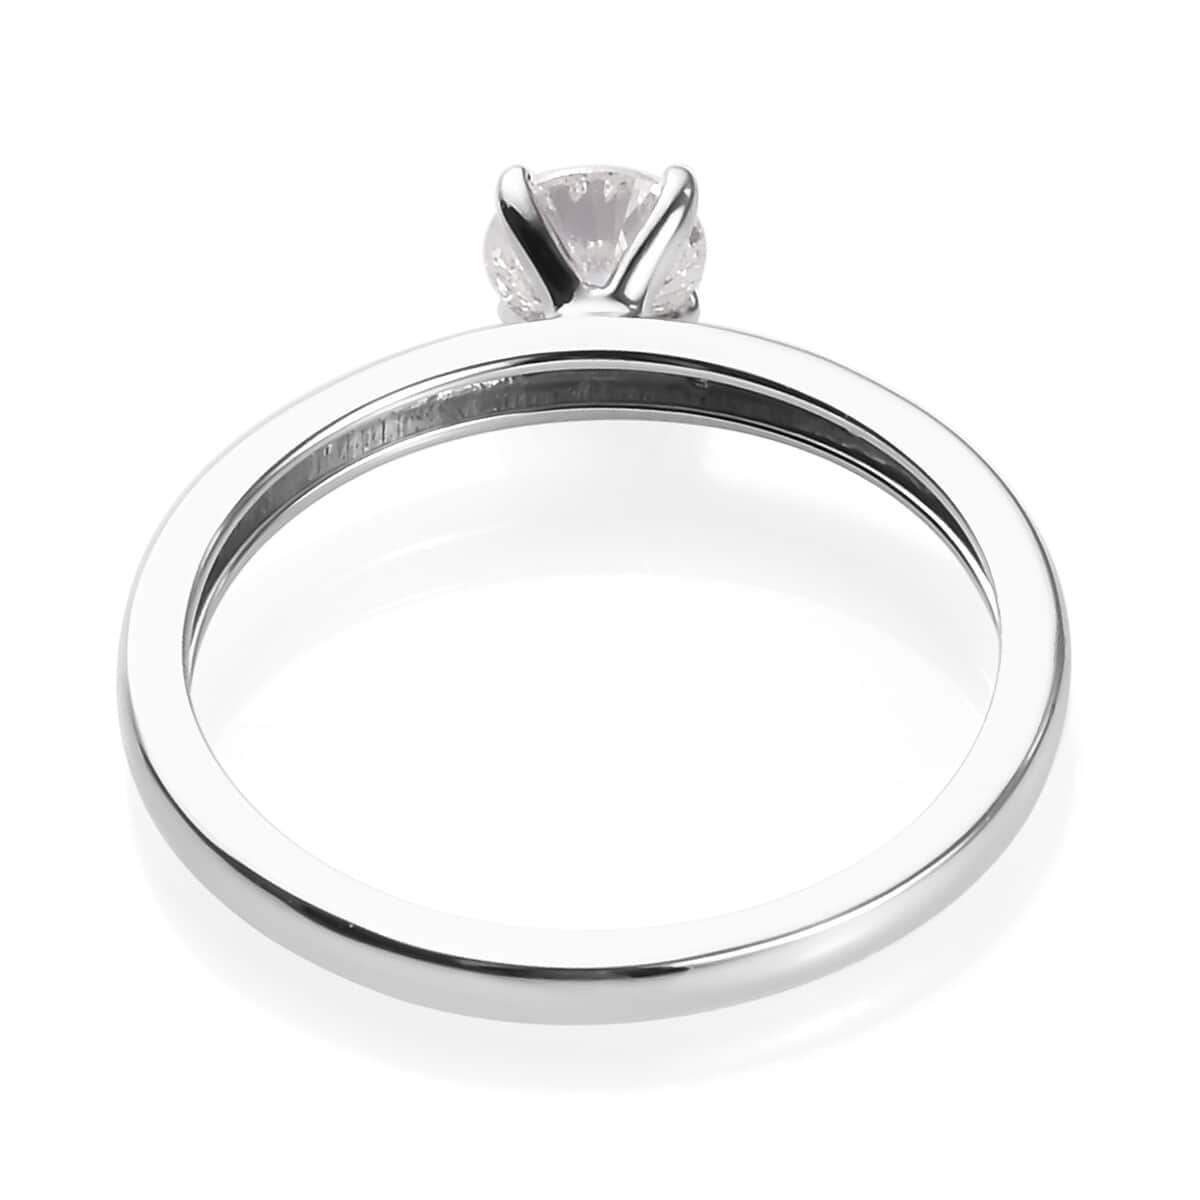 10K White Gold G-H I3 Diamond Ring (Size 7.0) 2 Grams 0.50 ctw image number 4